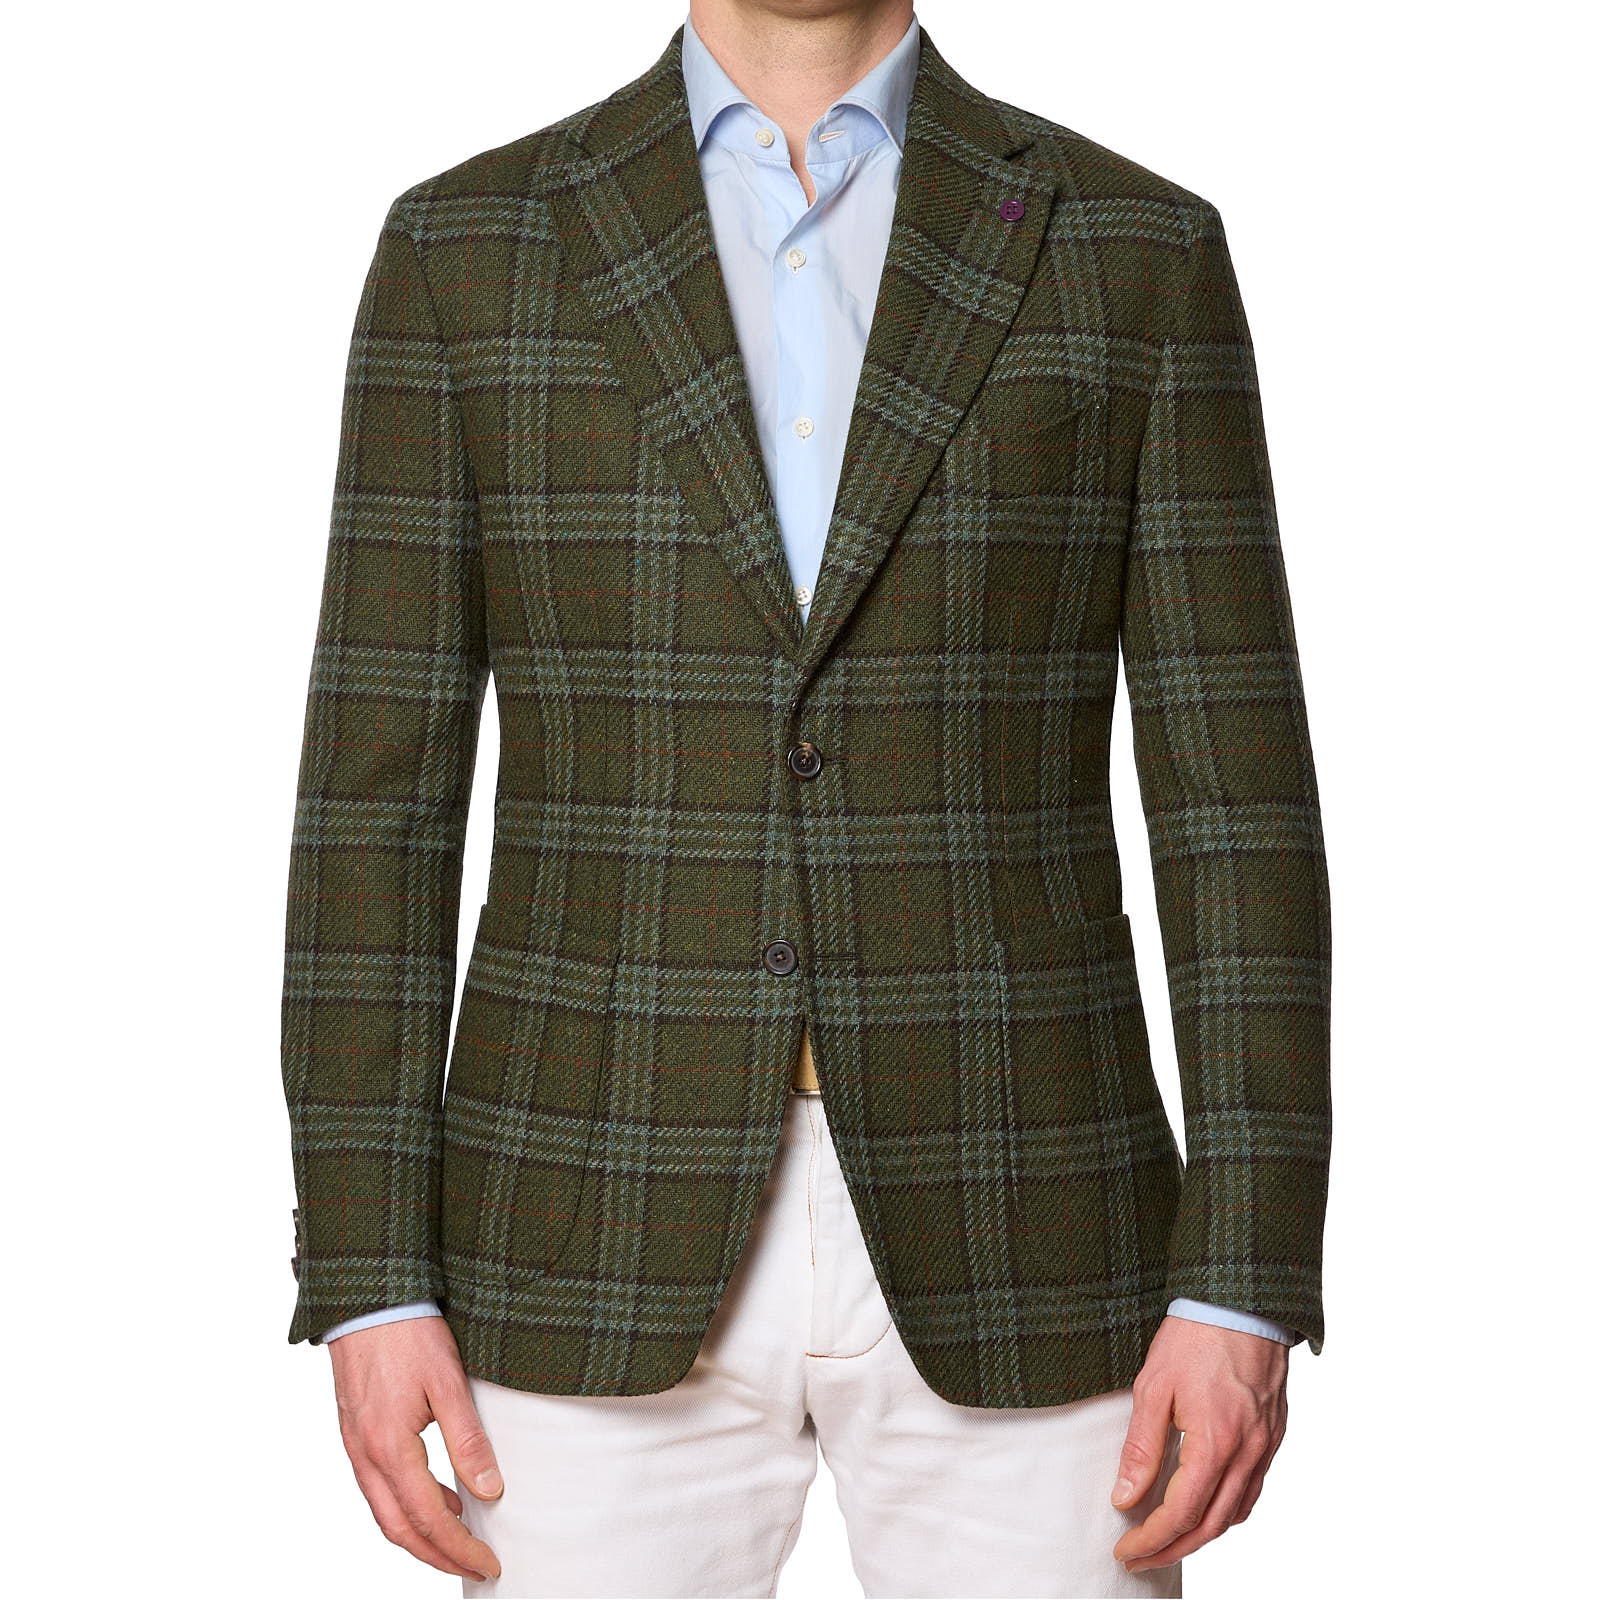 SARTORIA PARTENOPEA Green Plaid Wool Jacket EU 50 NEW US 40 Current Model